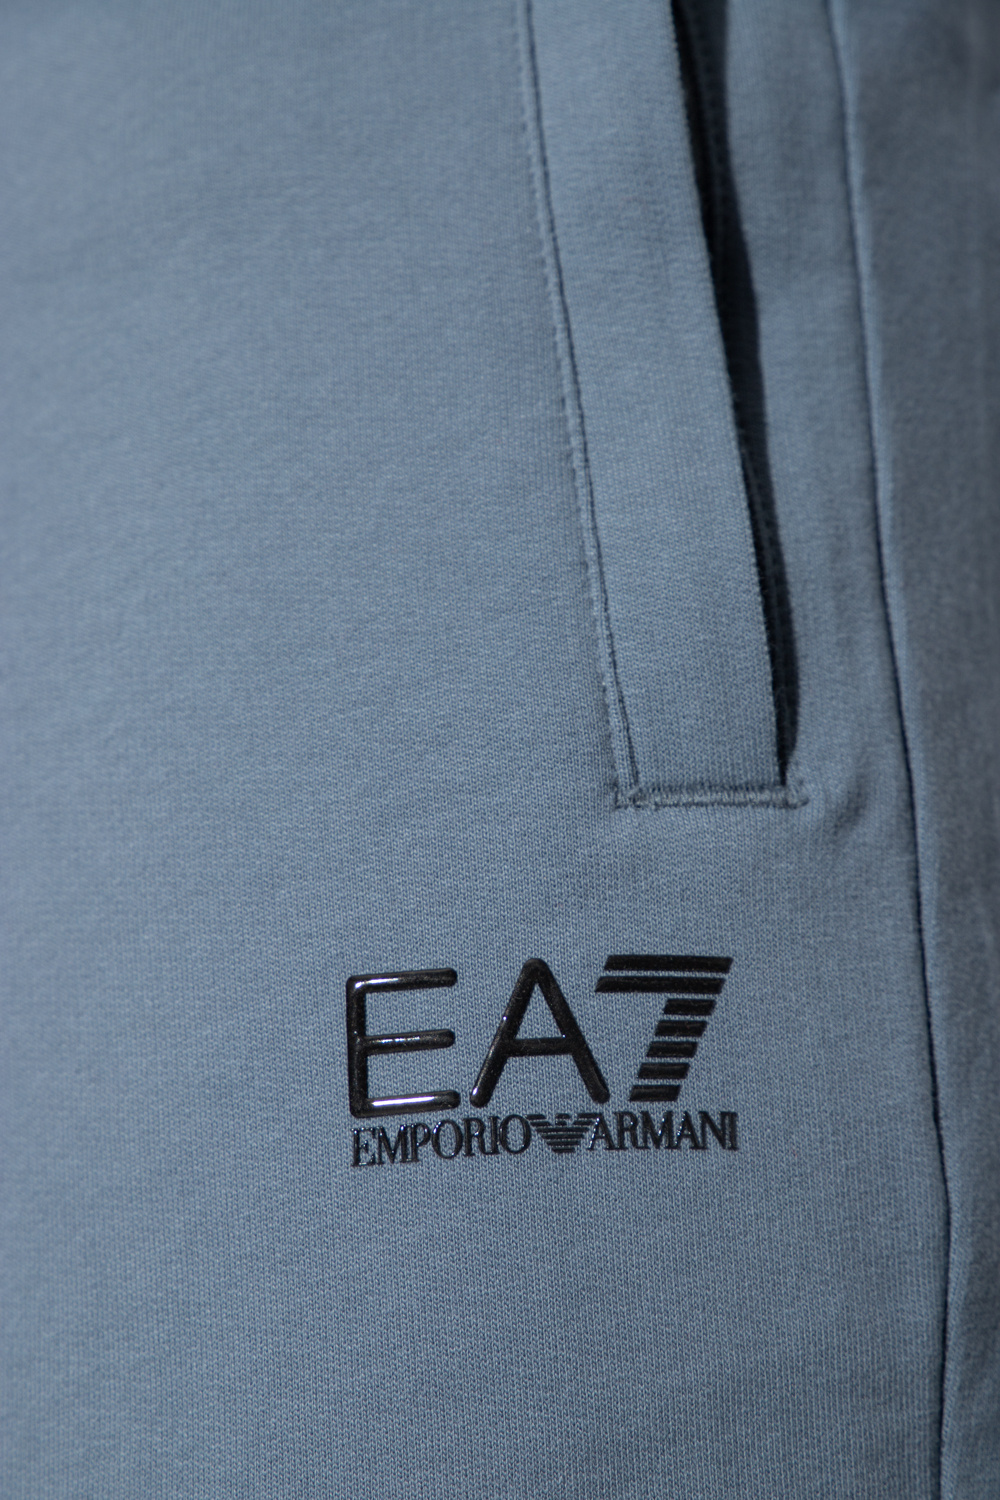 Рубашка emporio patch armani Головной убор куплен в брендовом магазине Италии patch armani